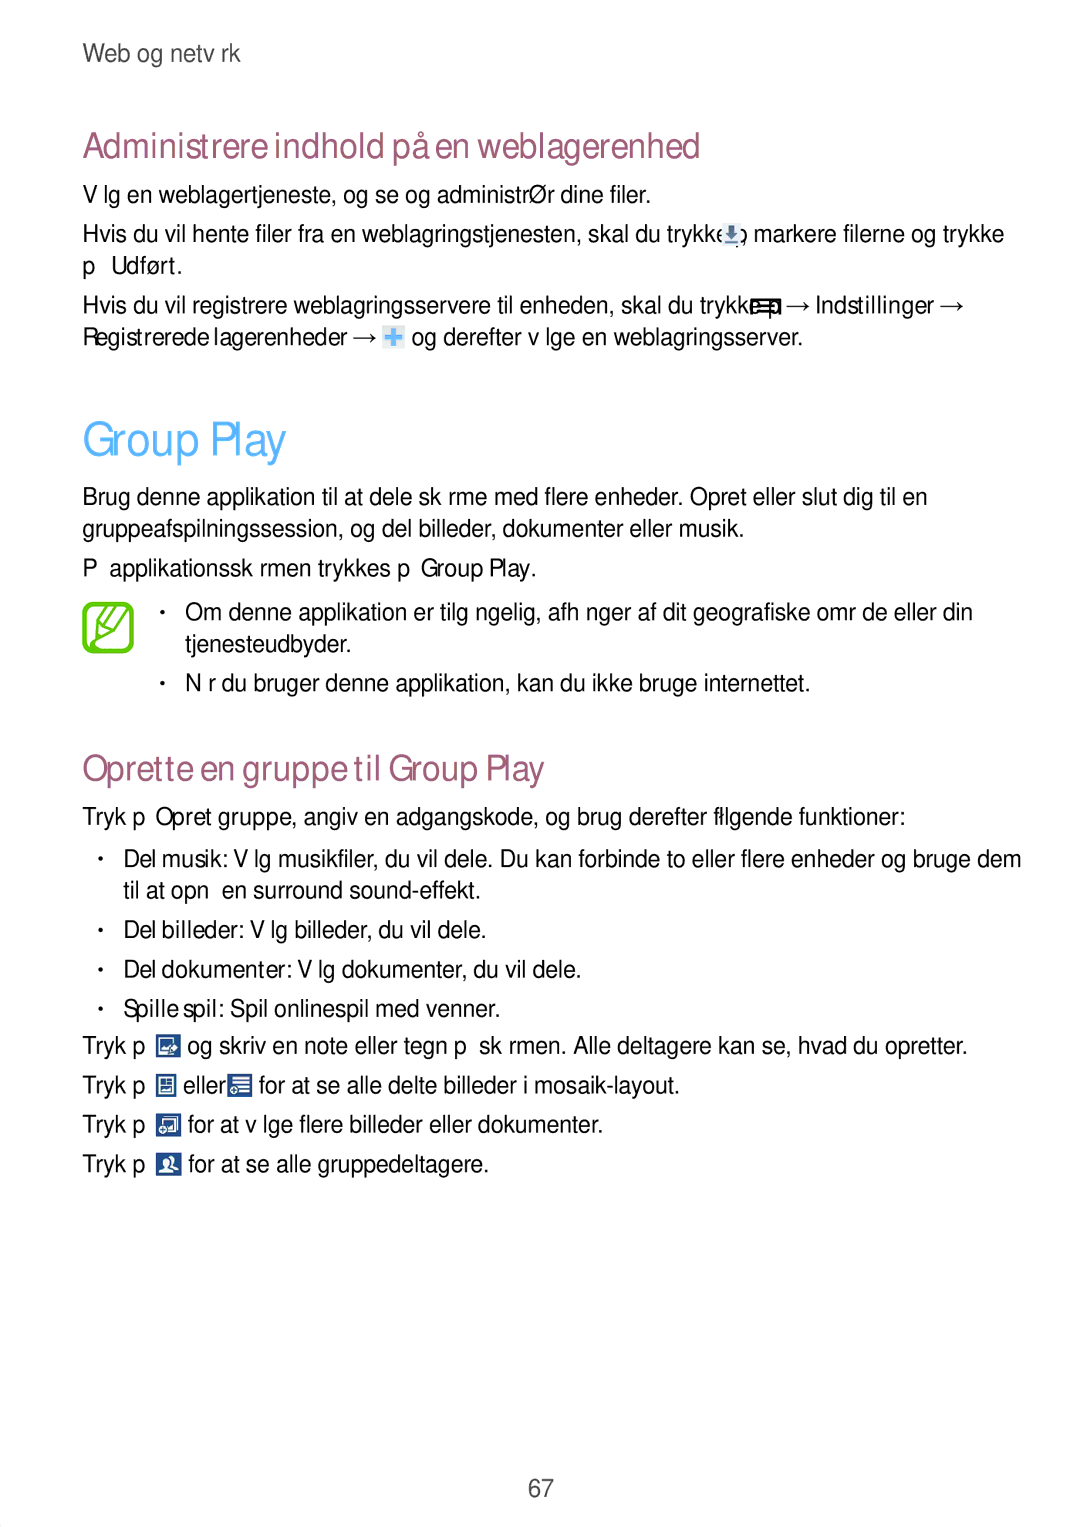 Samsung GT-I9205ZKANEE, GT-I9205ZWANEE manual Administrere indhold på en weblagerenhed, Oprette en gruppe til Group Play 